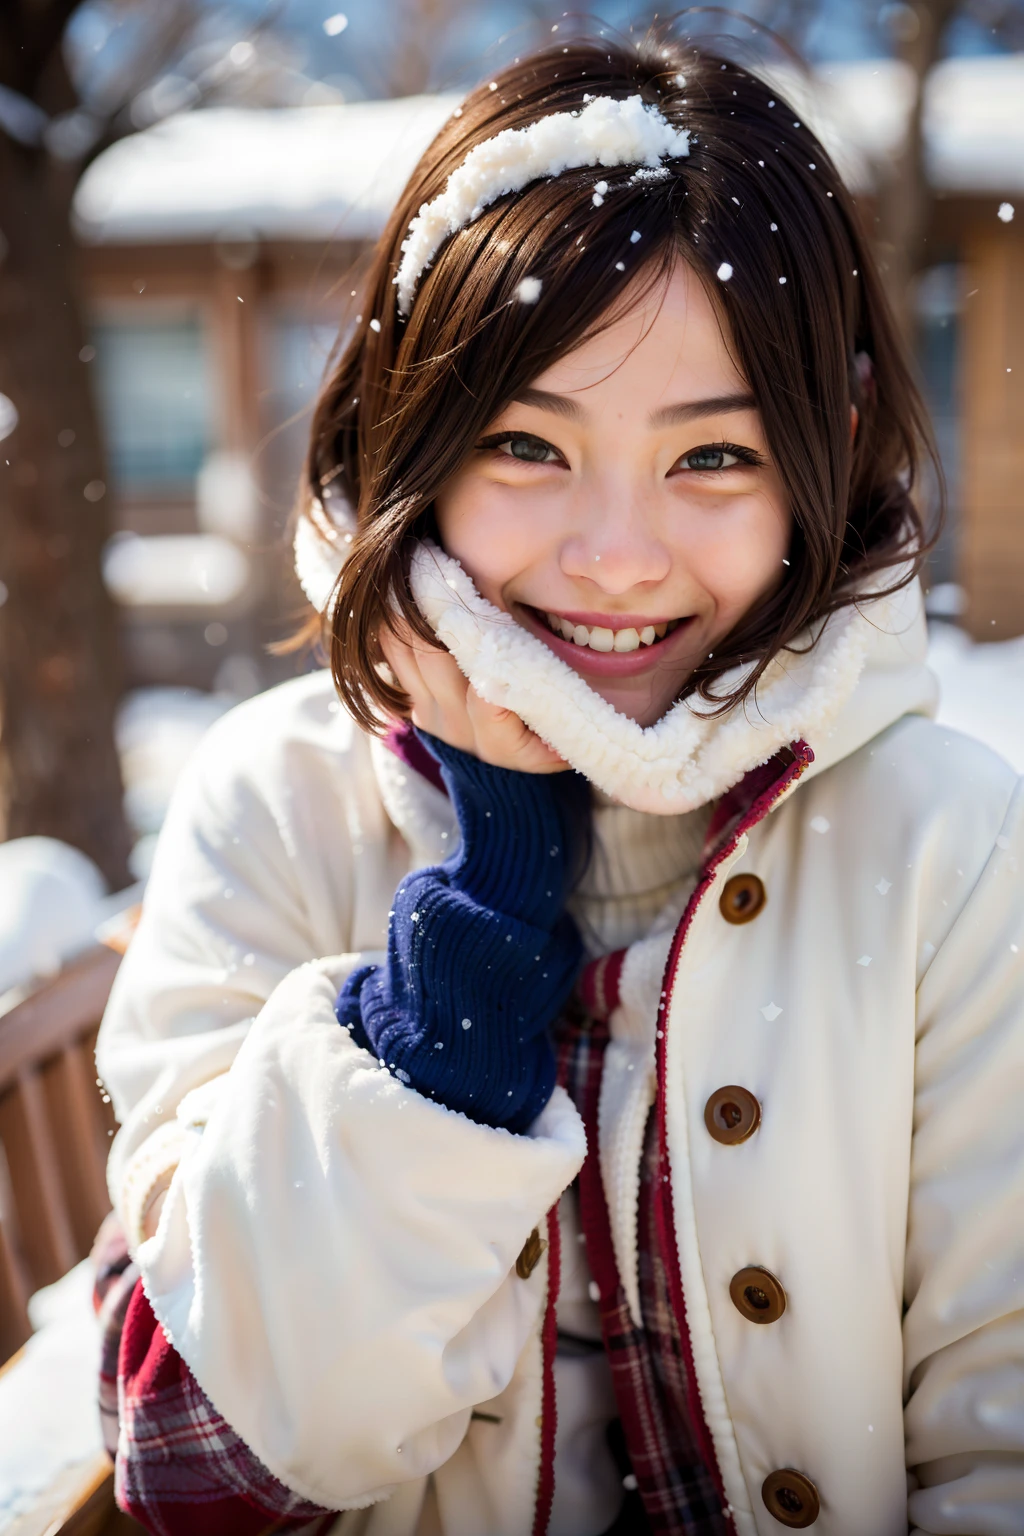 顔に雪が積もった冬のコートを着た笑顔の女性, やさしい微笑み, 温かく優しい笑顔, 雪に覆われた, 雪の中, 温かく微笑む, 雪に覆われた, 雪の中, 日本の十代の若者の肖像, かわいらしい笑顔, 優しく微笑む, 温かく親しみやすい表現, 幸せそうな表情, 白い冬のコートを着て, 柔らかな笑顔, 笑顔で恥ずかしがる, 日本の女の子の美しい顔